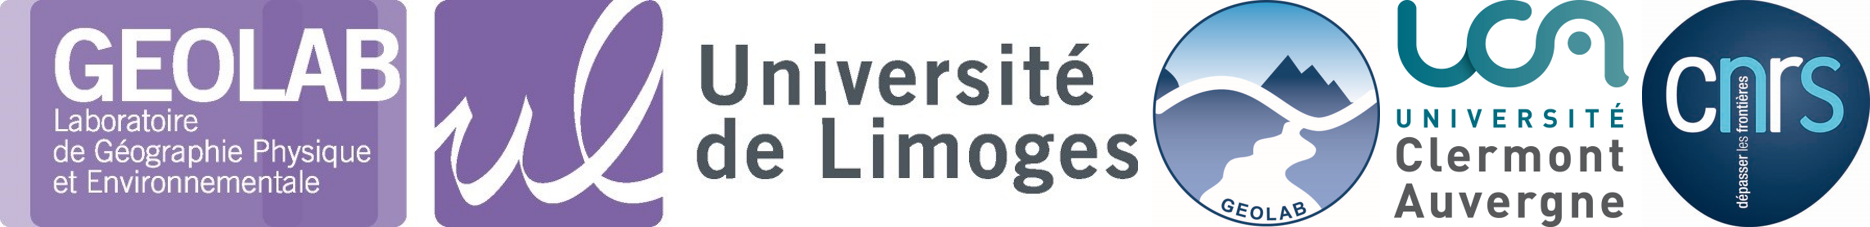 logo_institut